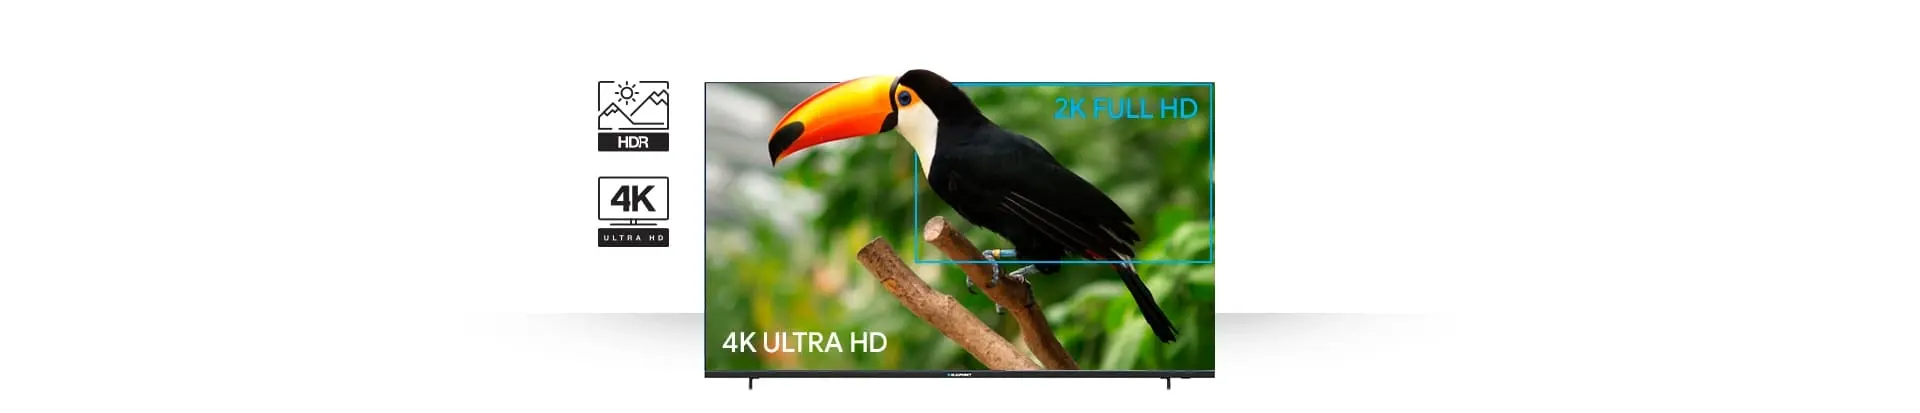 Телевизор UHD 4K Smart TV LED Blaupunkt 50UB5000